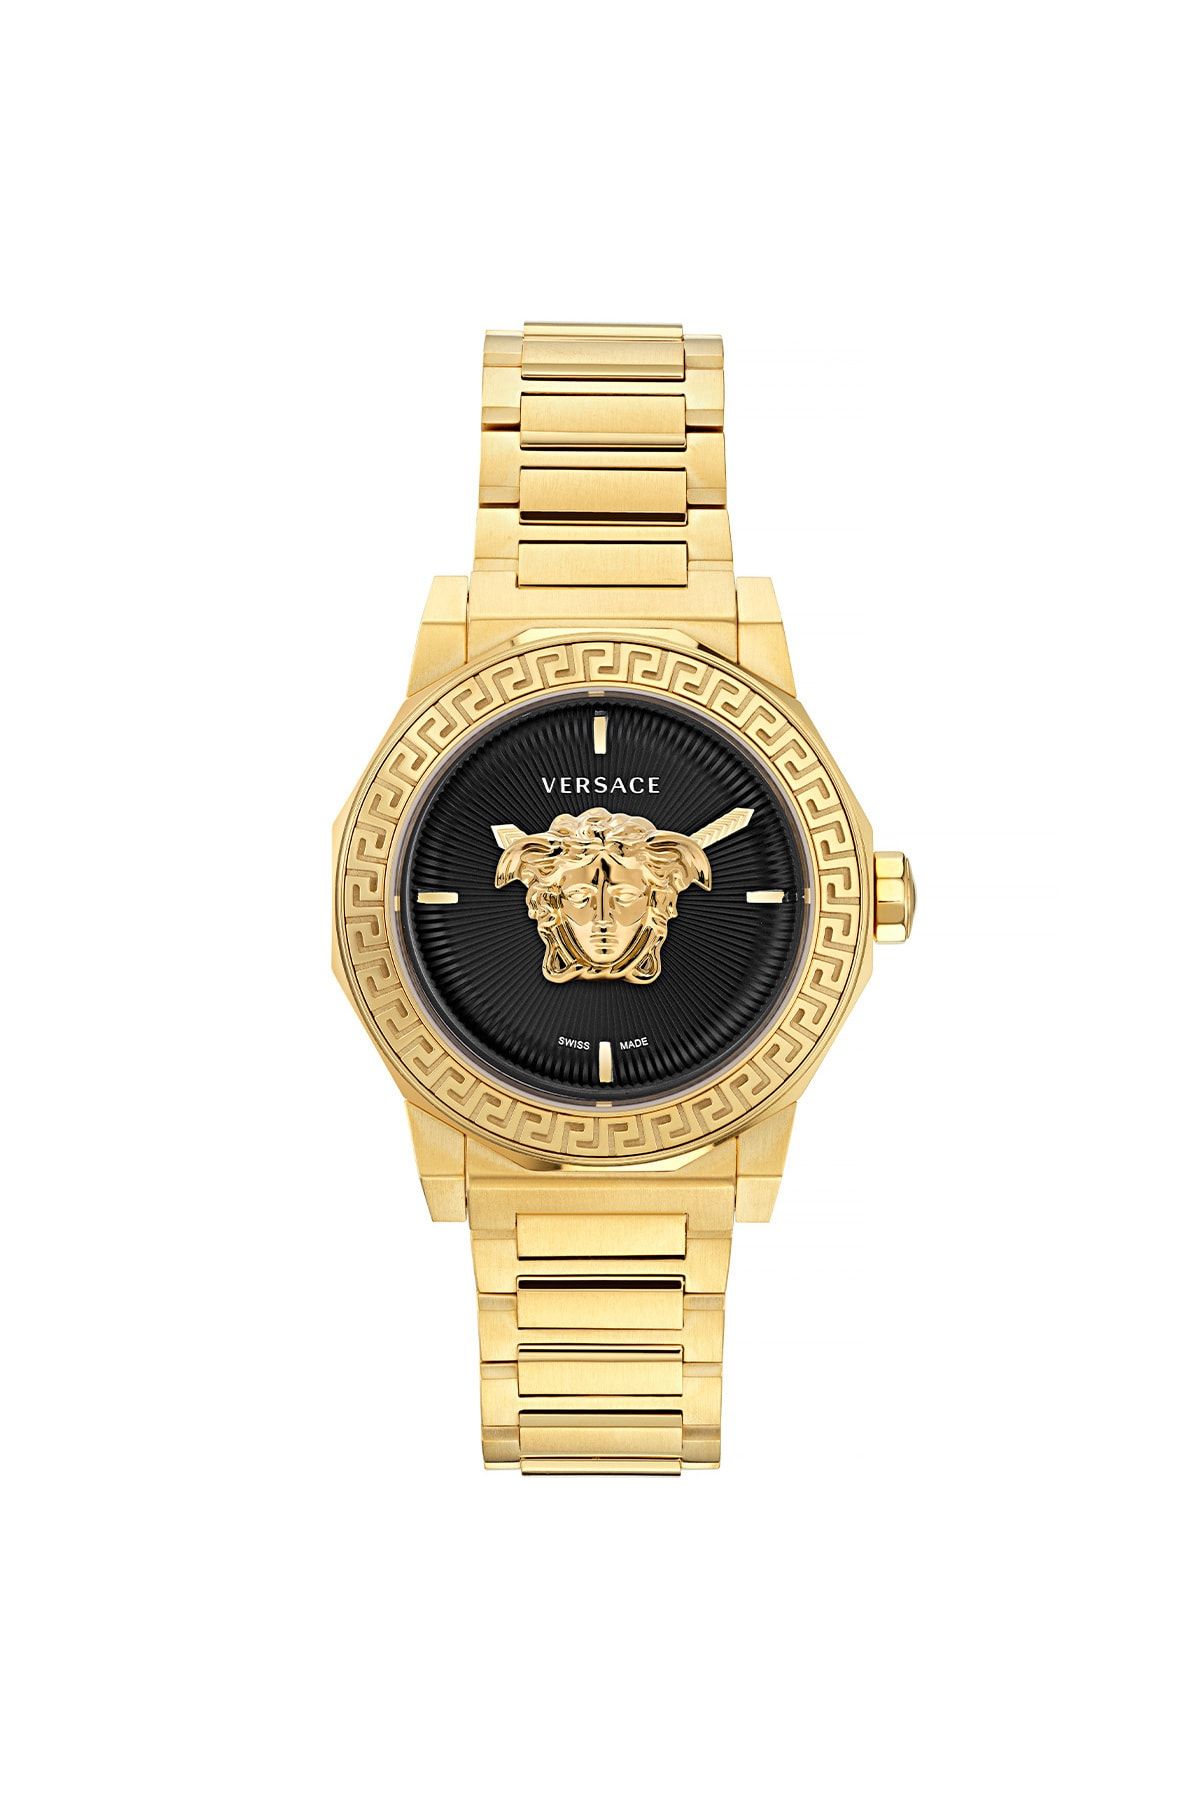 Versace ساعت مچی زنانه VRSCVE7B00623 ورساچه